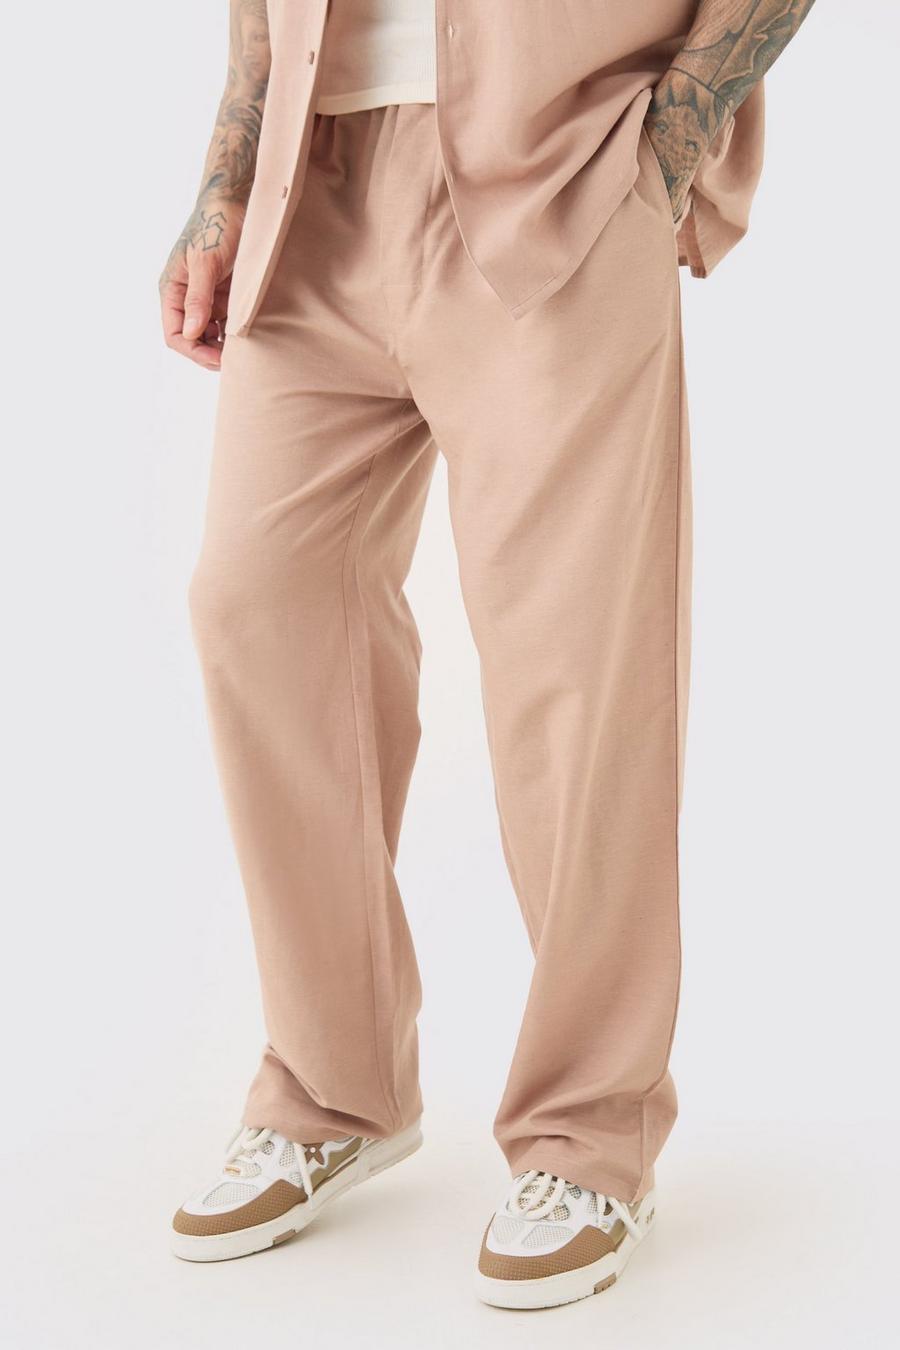 Pantalón Tall holgado de lino con cintura elástica en color topo, Taupe